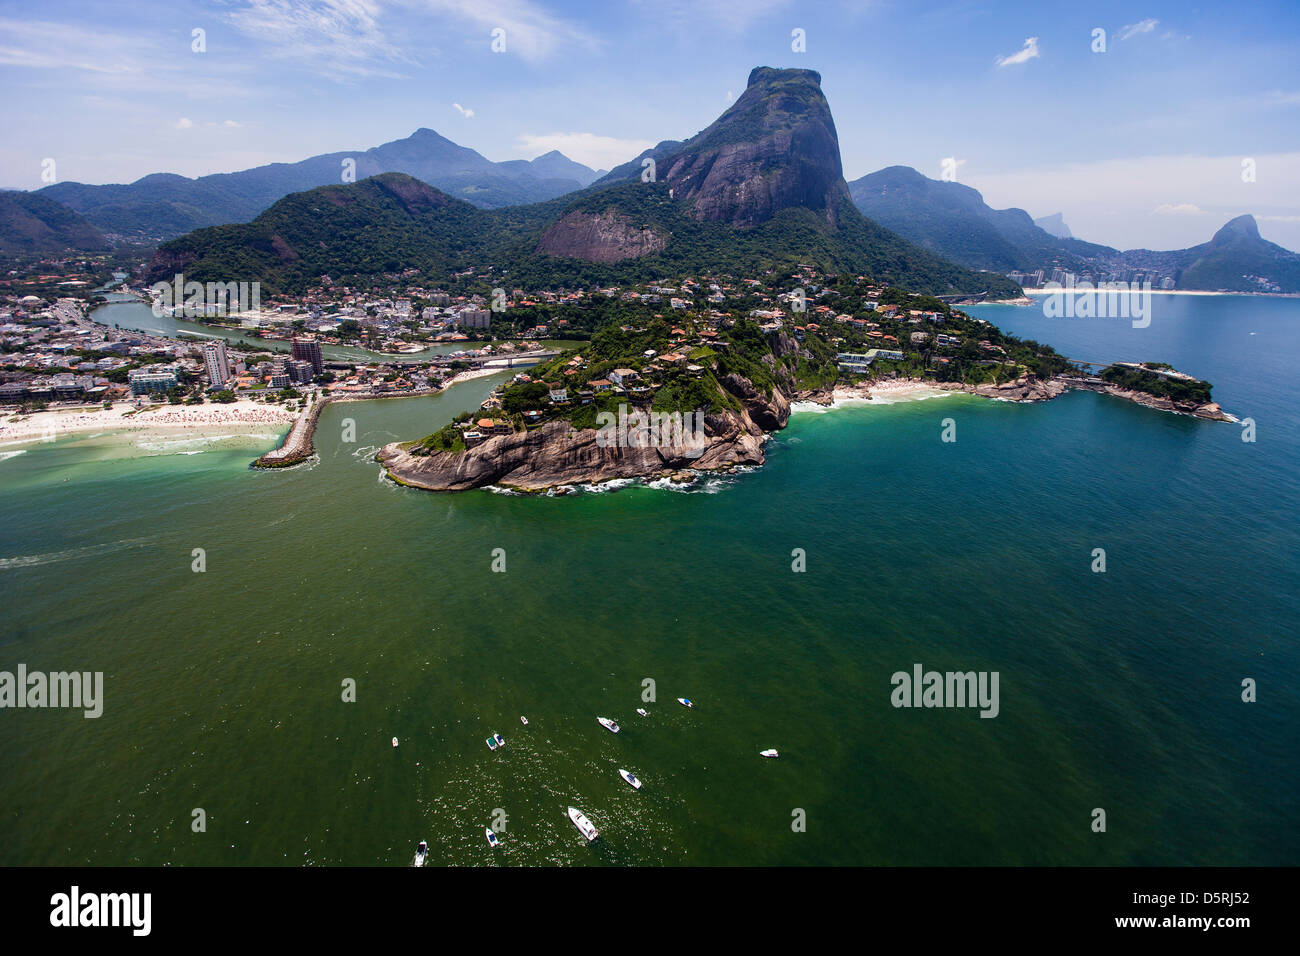 Morro da Joatinga und Joa gehobenen Viertel Oberschicht Villen Rio De Janeiro Barra da Tijuca Strand und Quebra mar auf der linken Seite Stockfoto